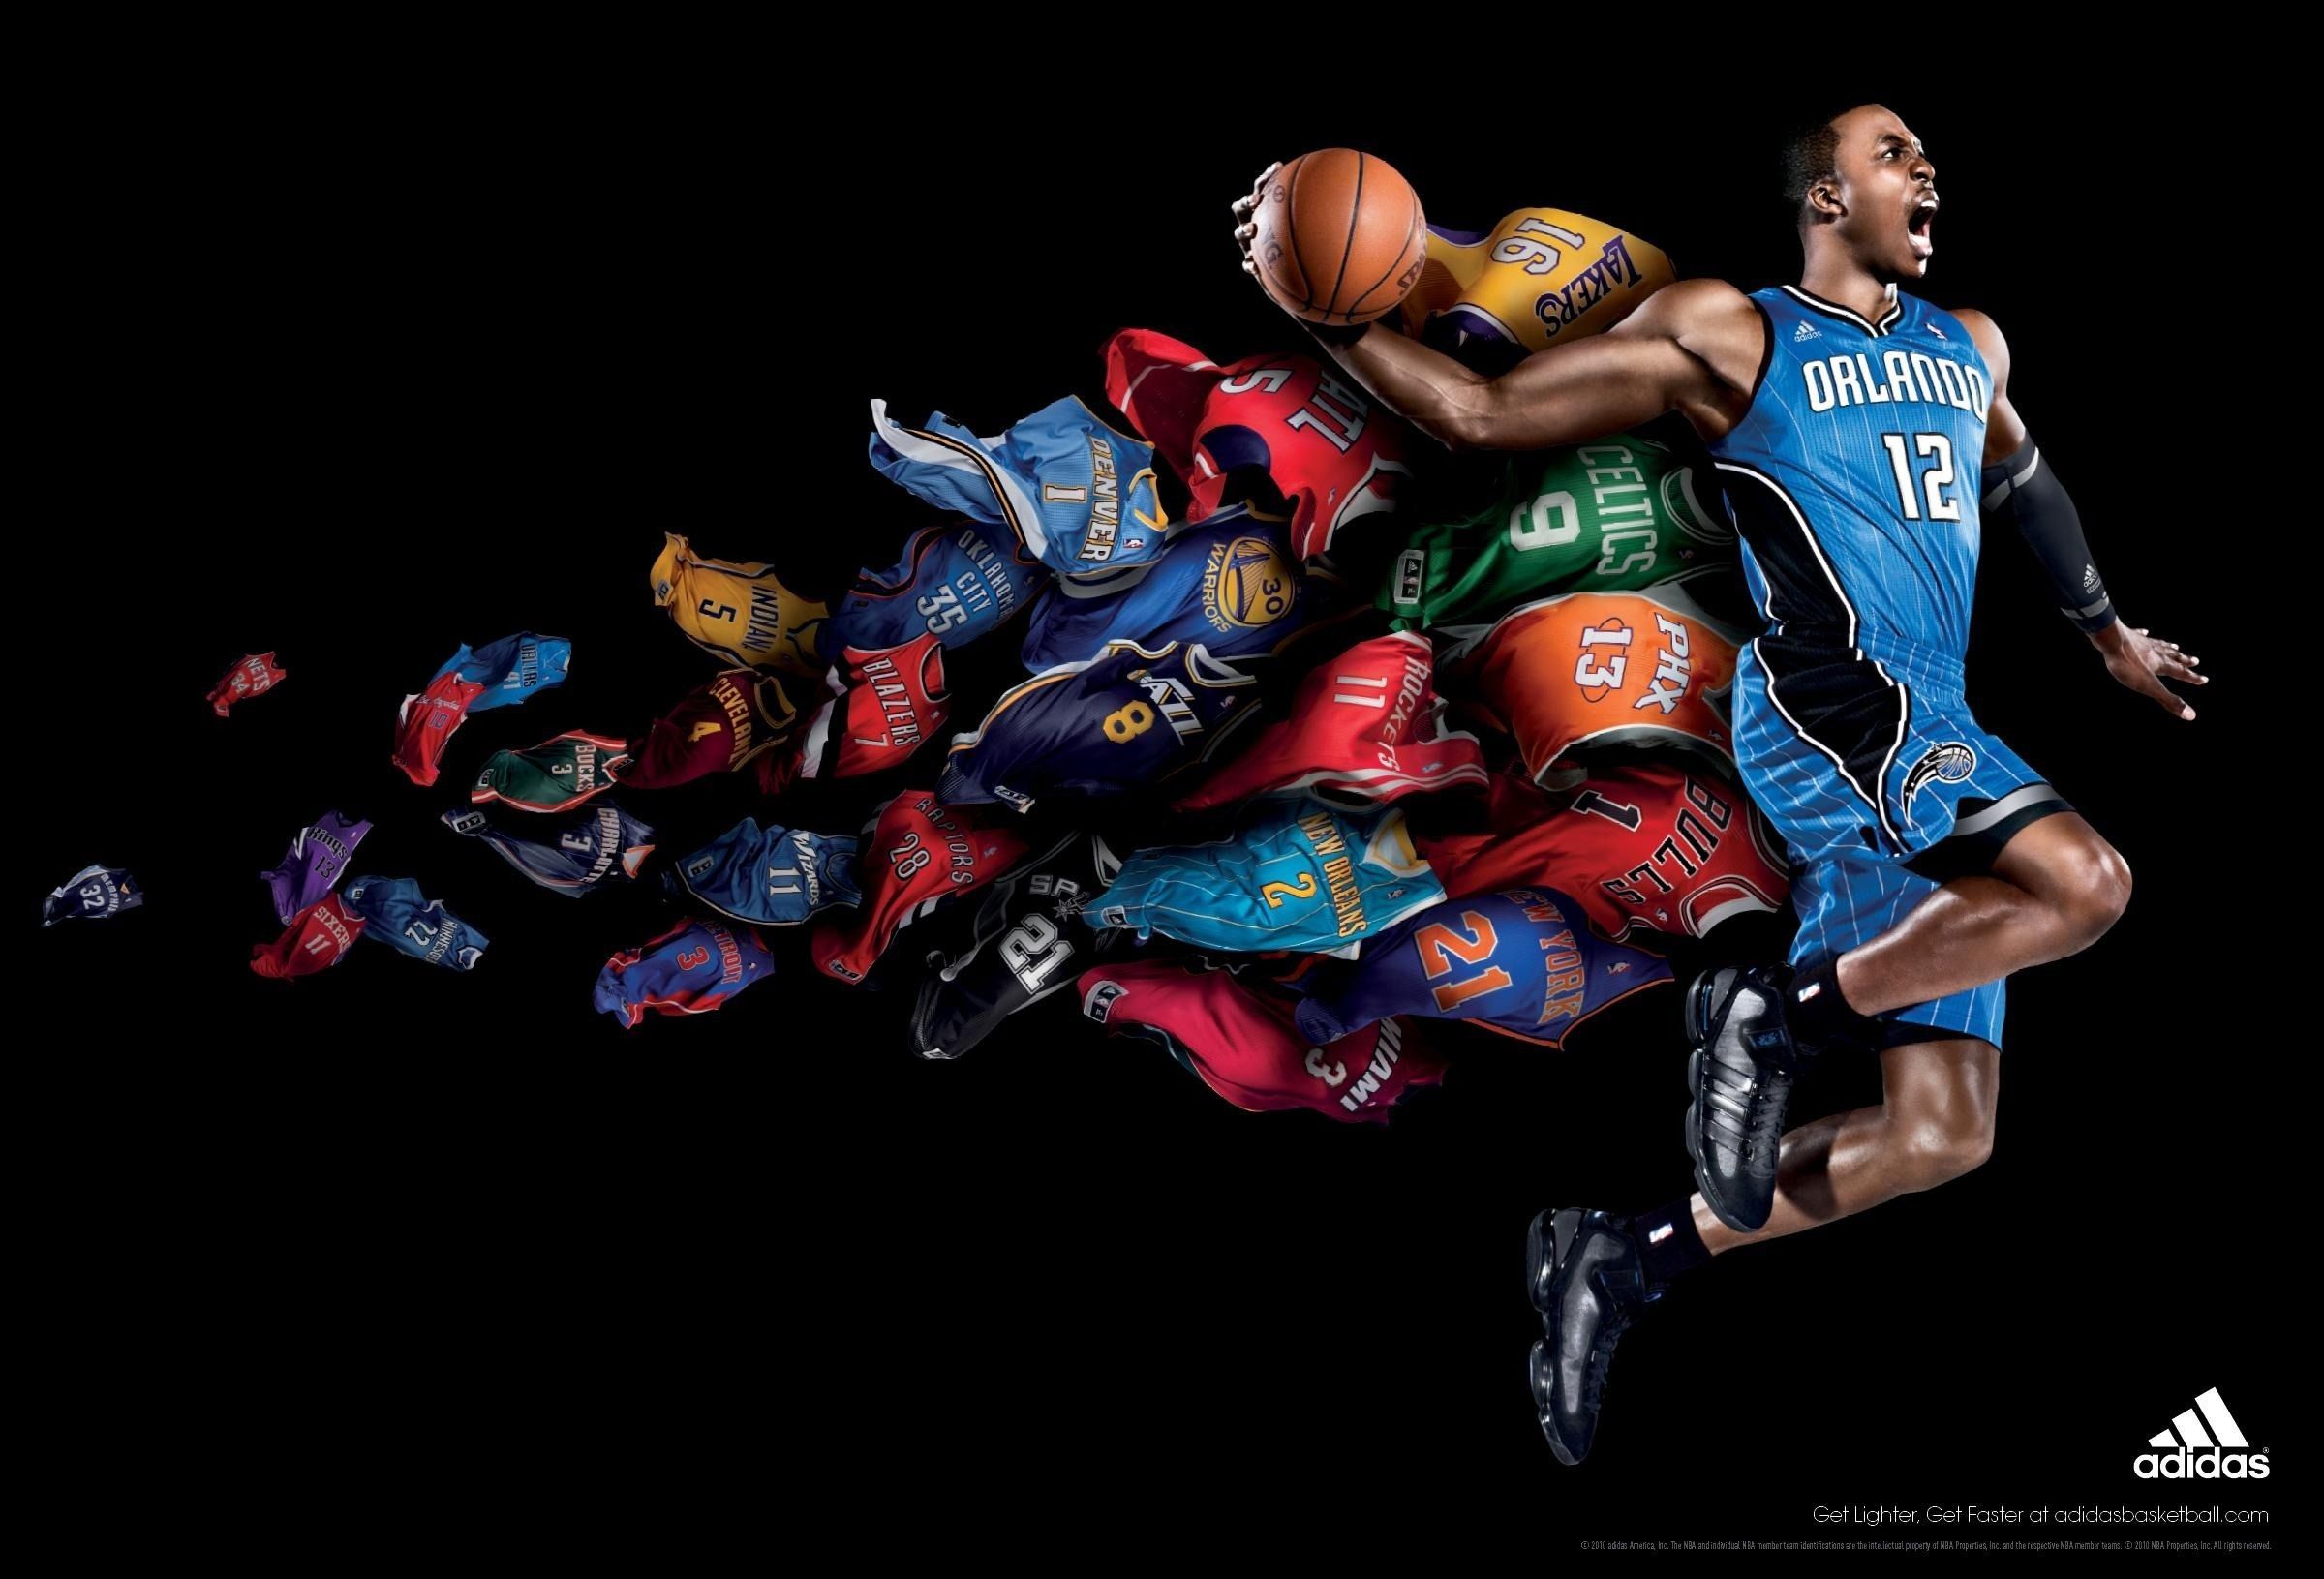 Basketball wallpapers, desktop wallpaper GoodWP.com